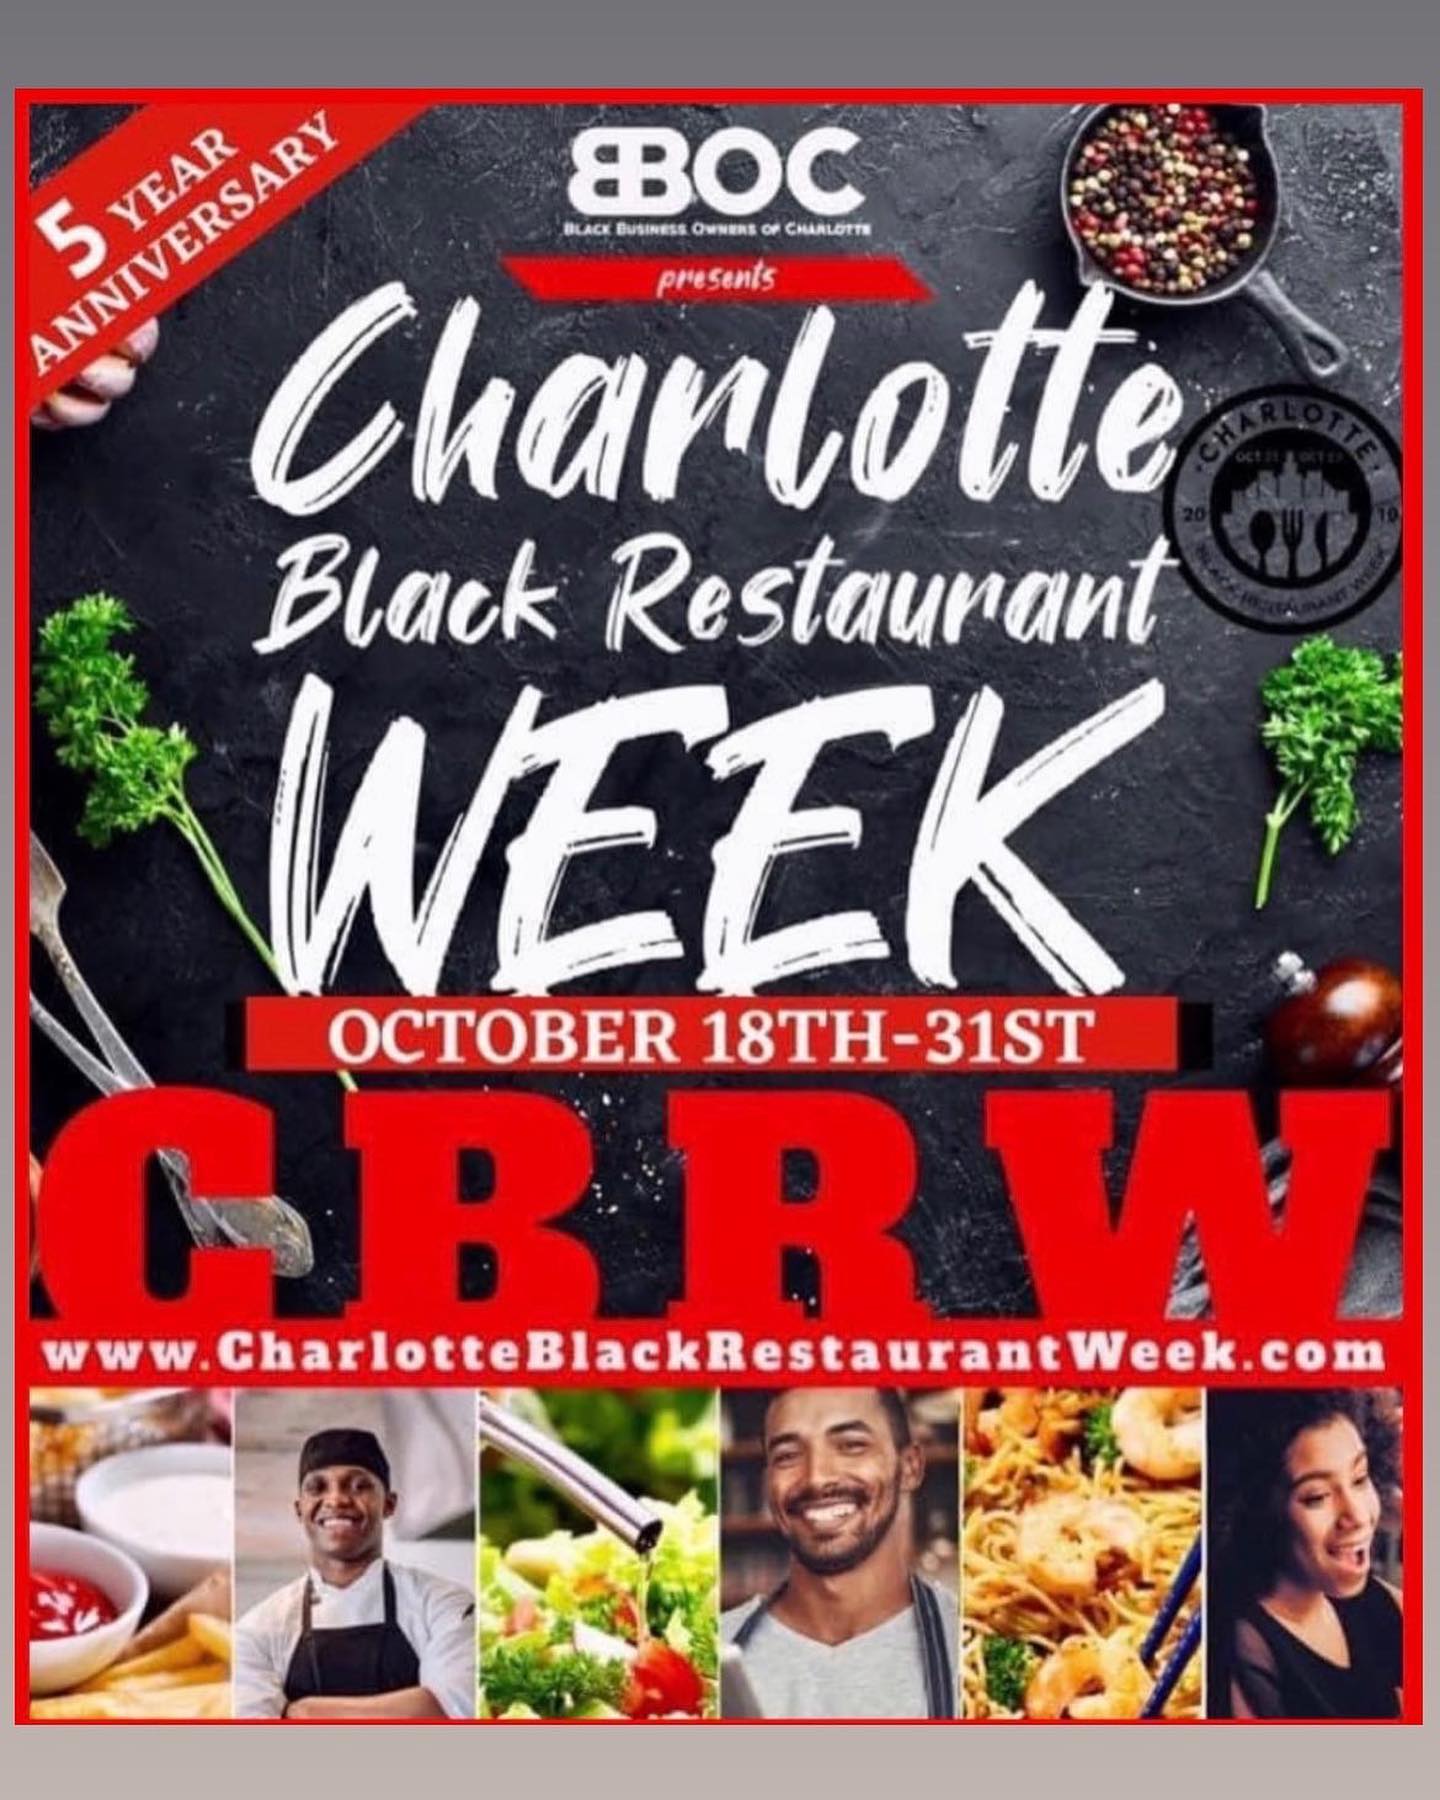 5th Annual Charlotte Black Restaurant Week Runs Through Halloween